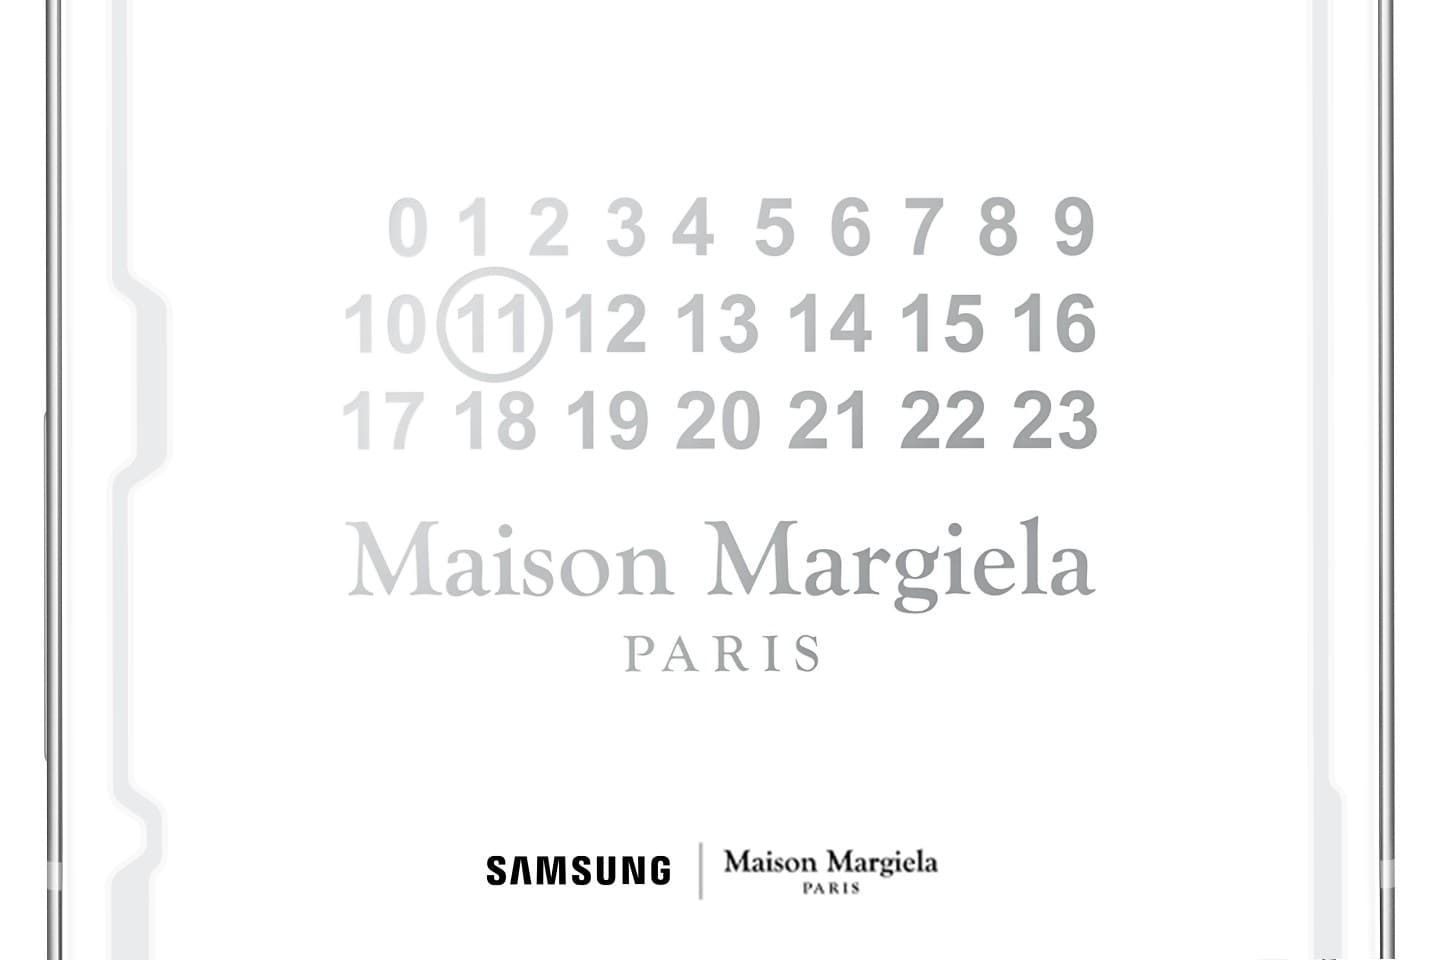 A Samsung együttműködésre készül a Maison Margiela luxus divatházzal!